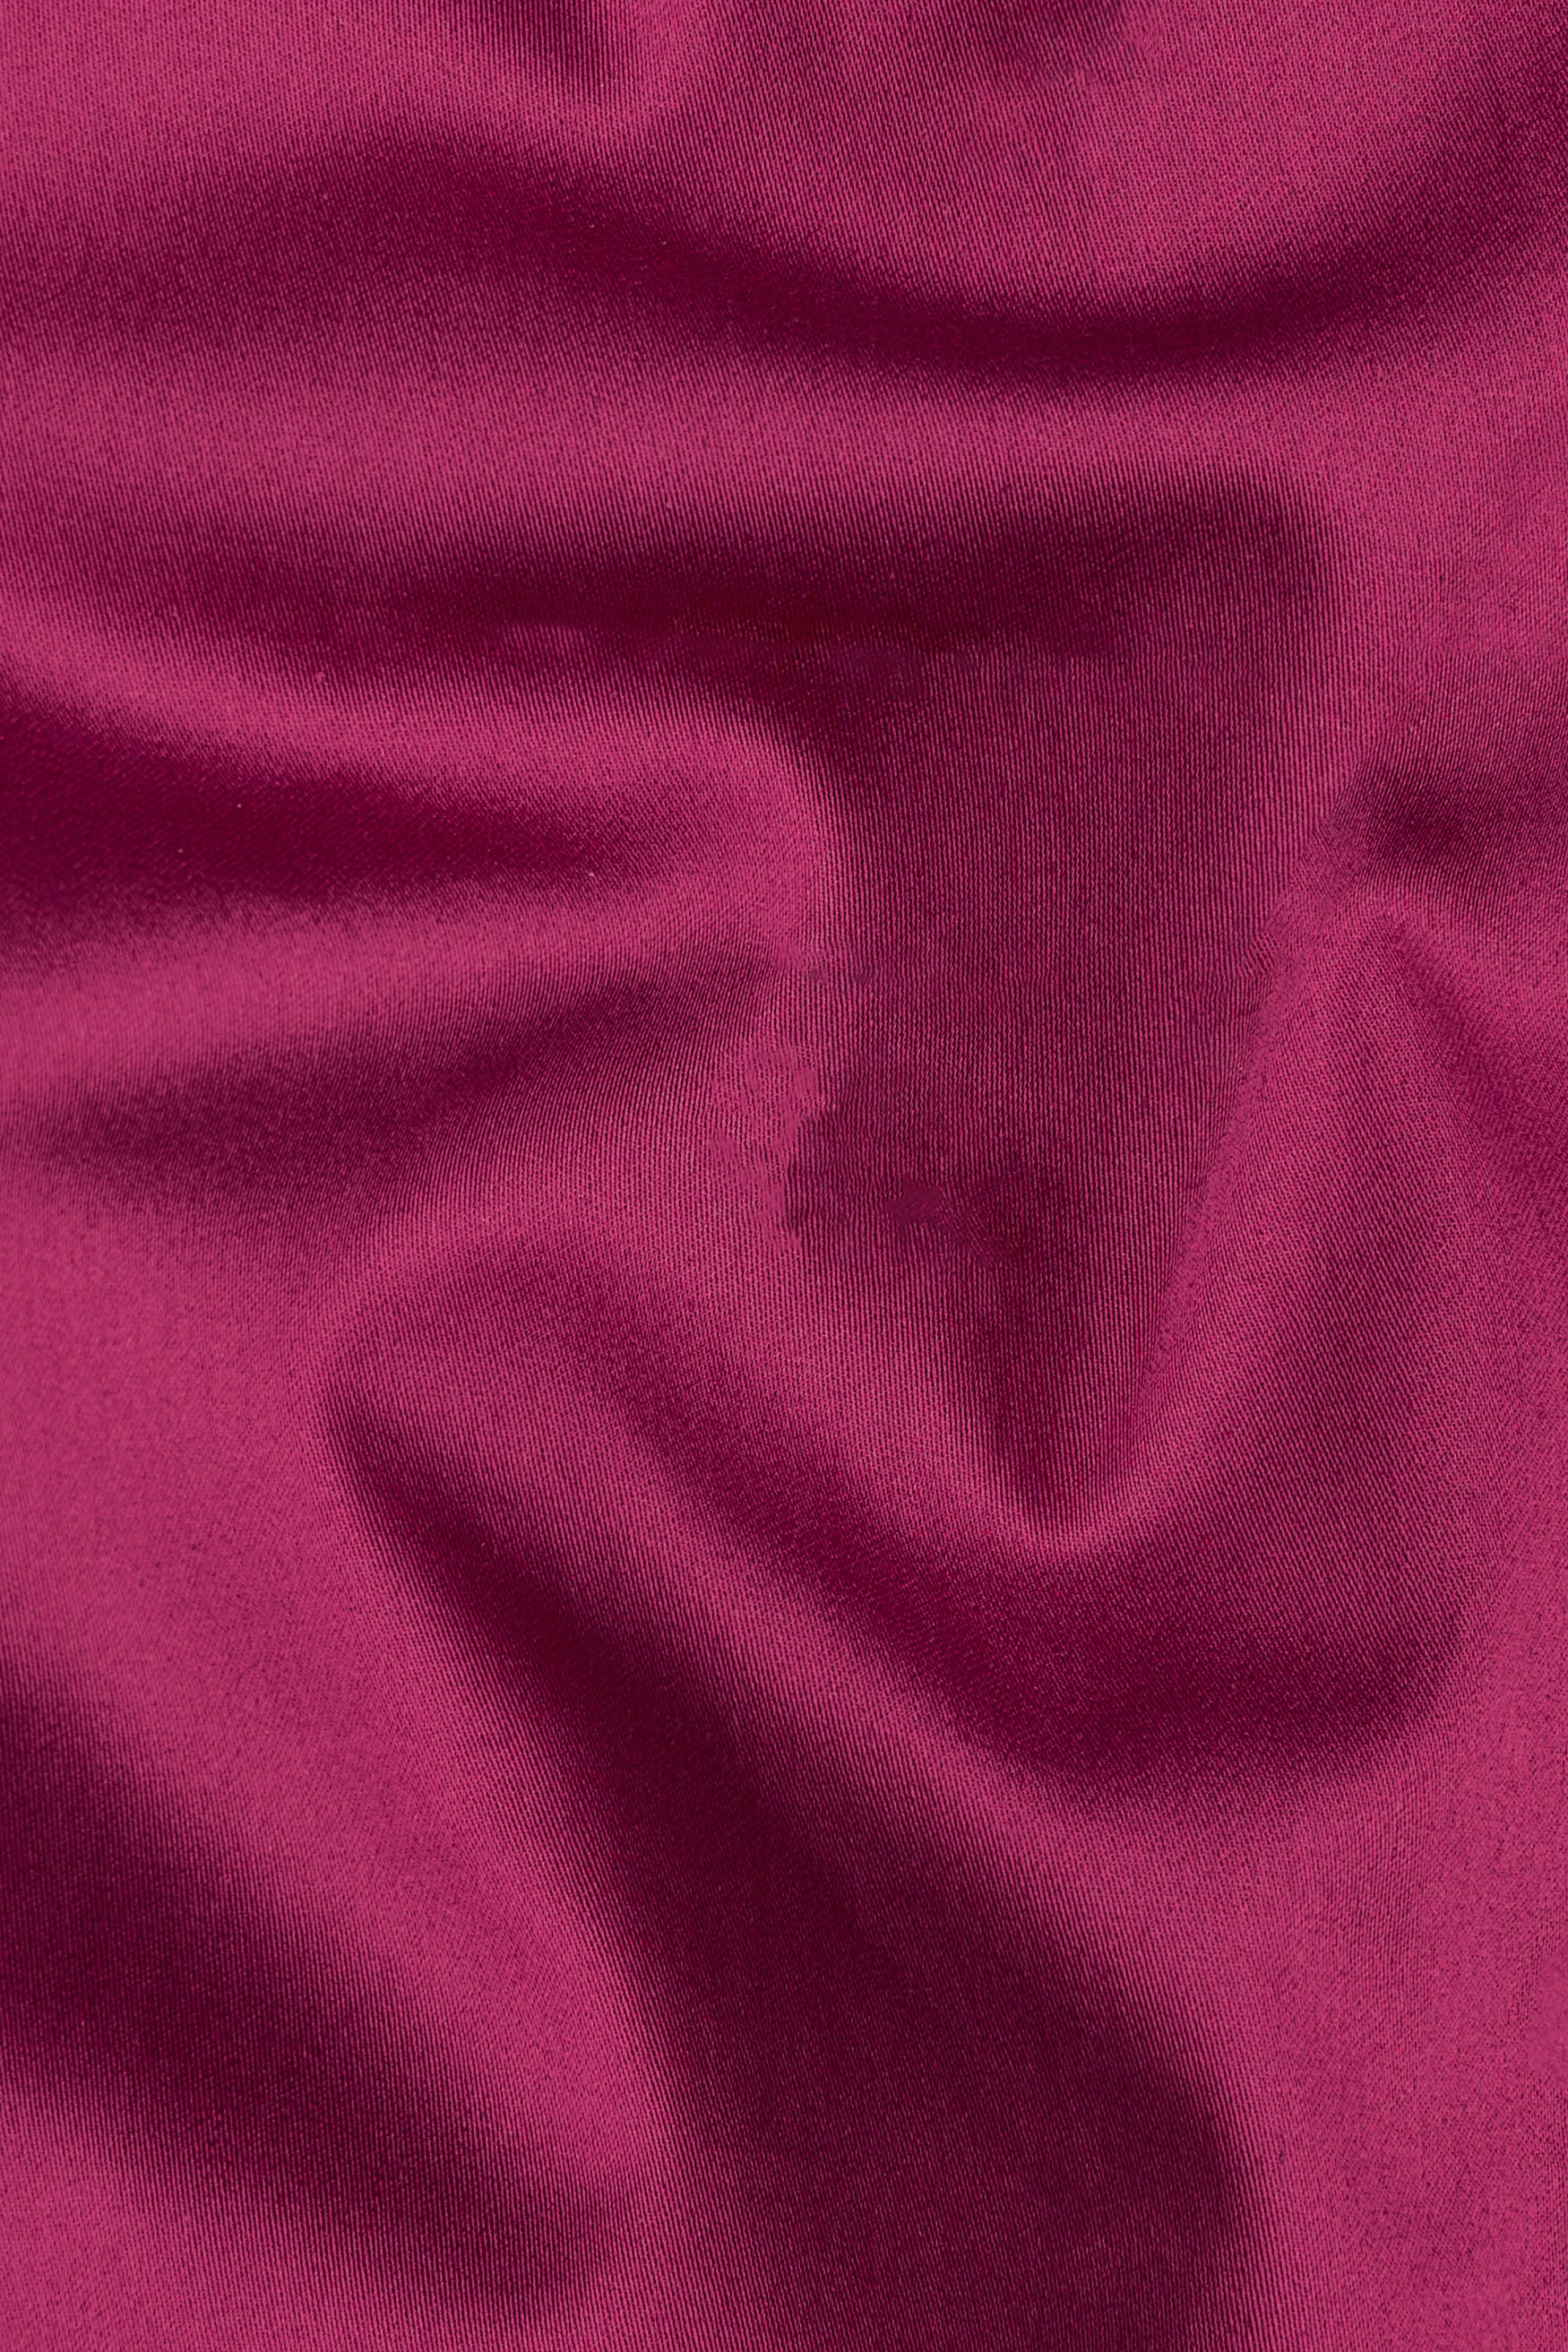 Rouge Pink Subtle Sheen Super Soft Premium Cotton Pathani